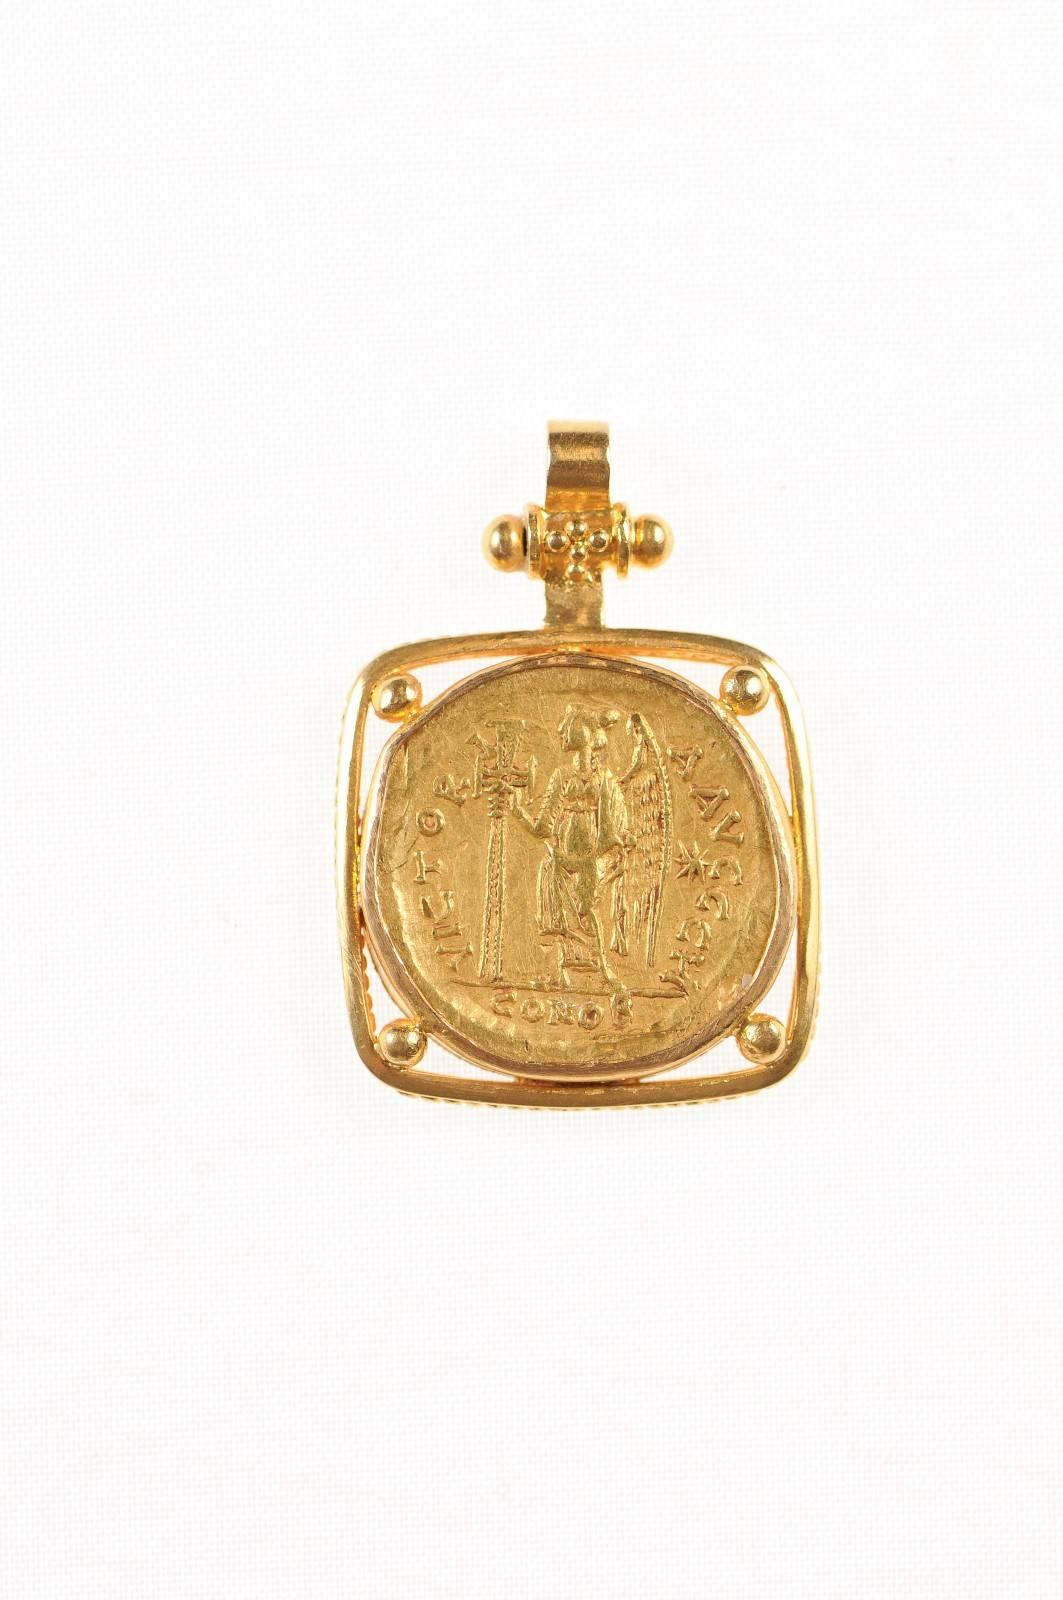 Eine authentische Zeno die Zweite Herrschaft, AV Gold Solidus römische kaiserliche Münze (Konstantinopel Münze, ca. 476-491 n. Chr.), in einem quadratischen 22-Karat-Gold Lünette mit 22-Karat-Gold Bügel gesetzt. Die Vorderseite dieser Münze zeigt